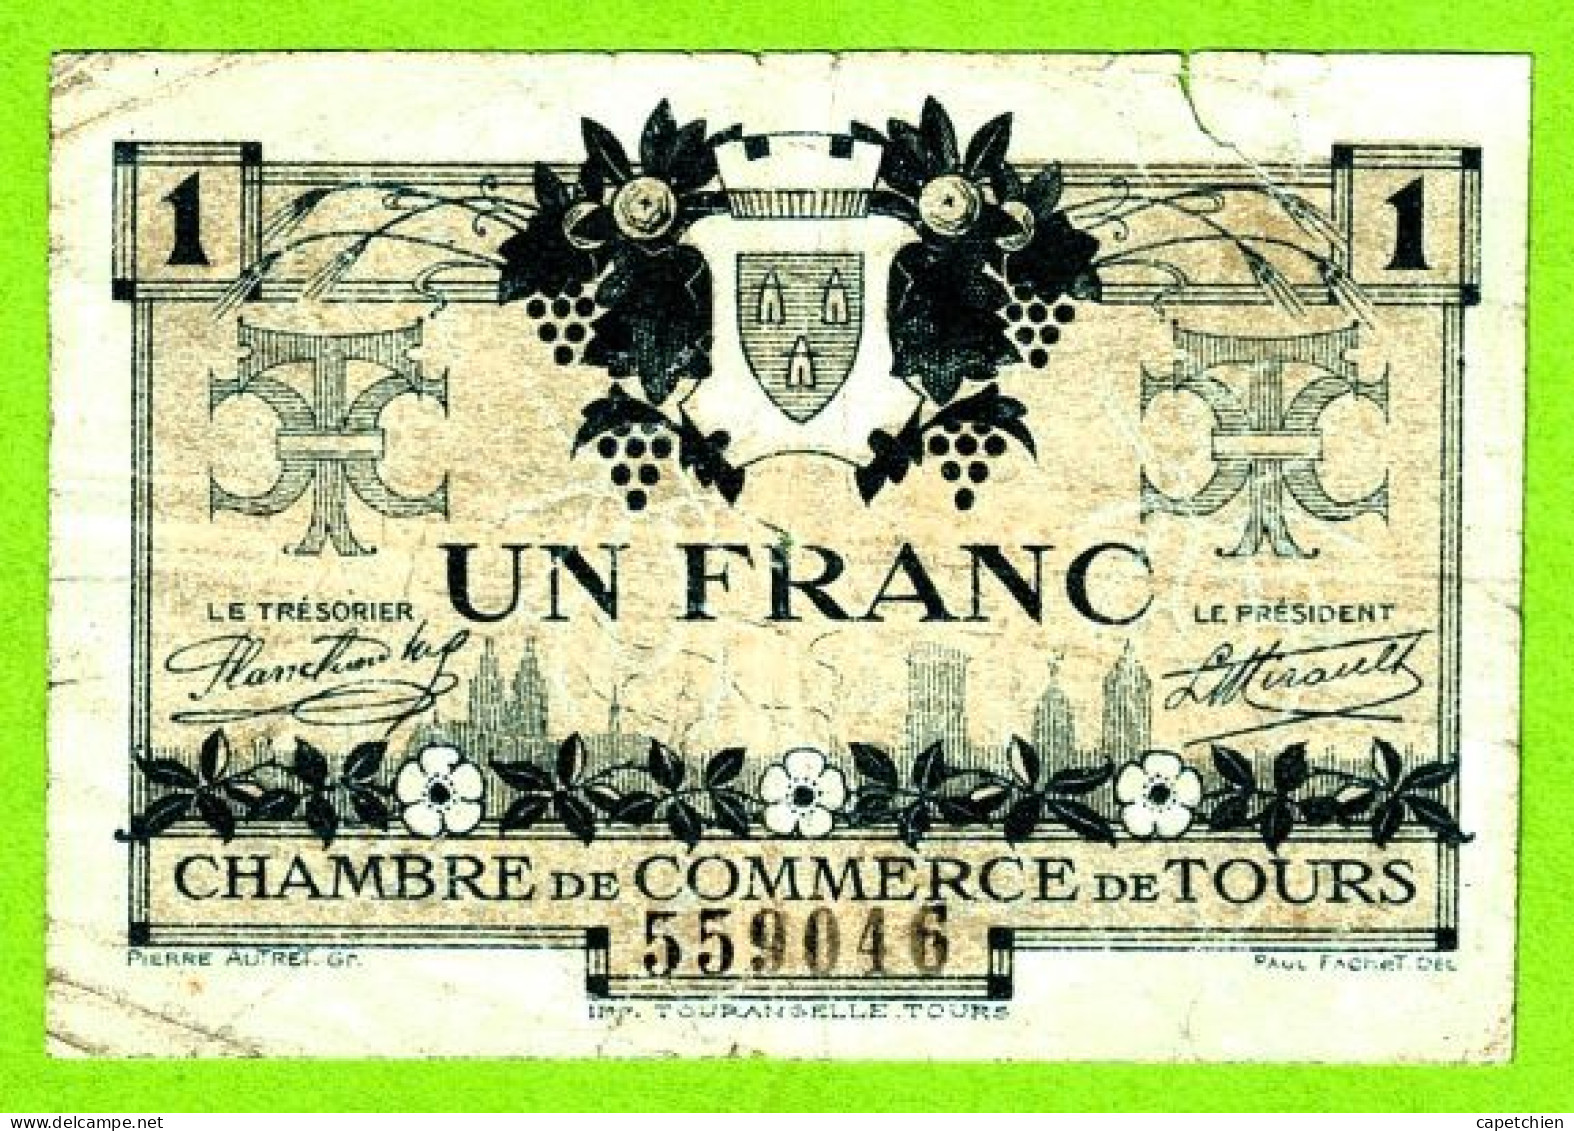 FRANCE / CHAMBRE De COMMERCE De TOURS / 1 FRANC / 9 MAI 1920 / 559046 / SERIE 2eme - Chambre De Commerce